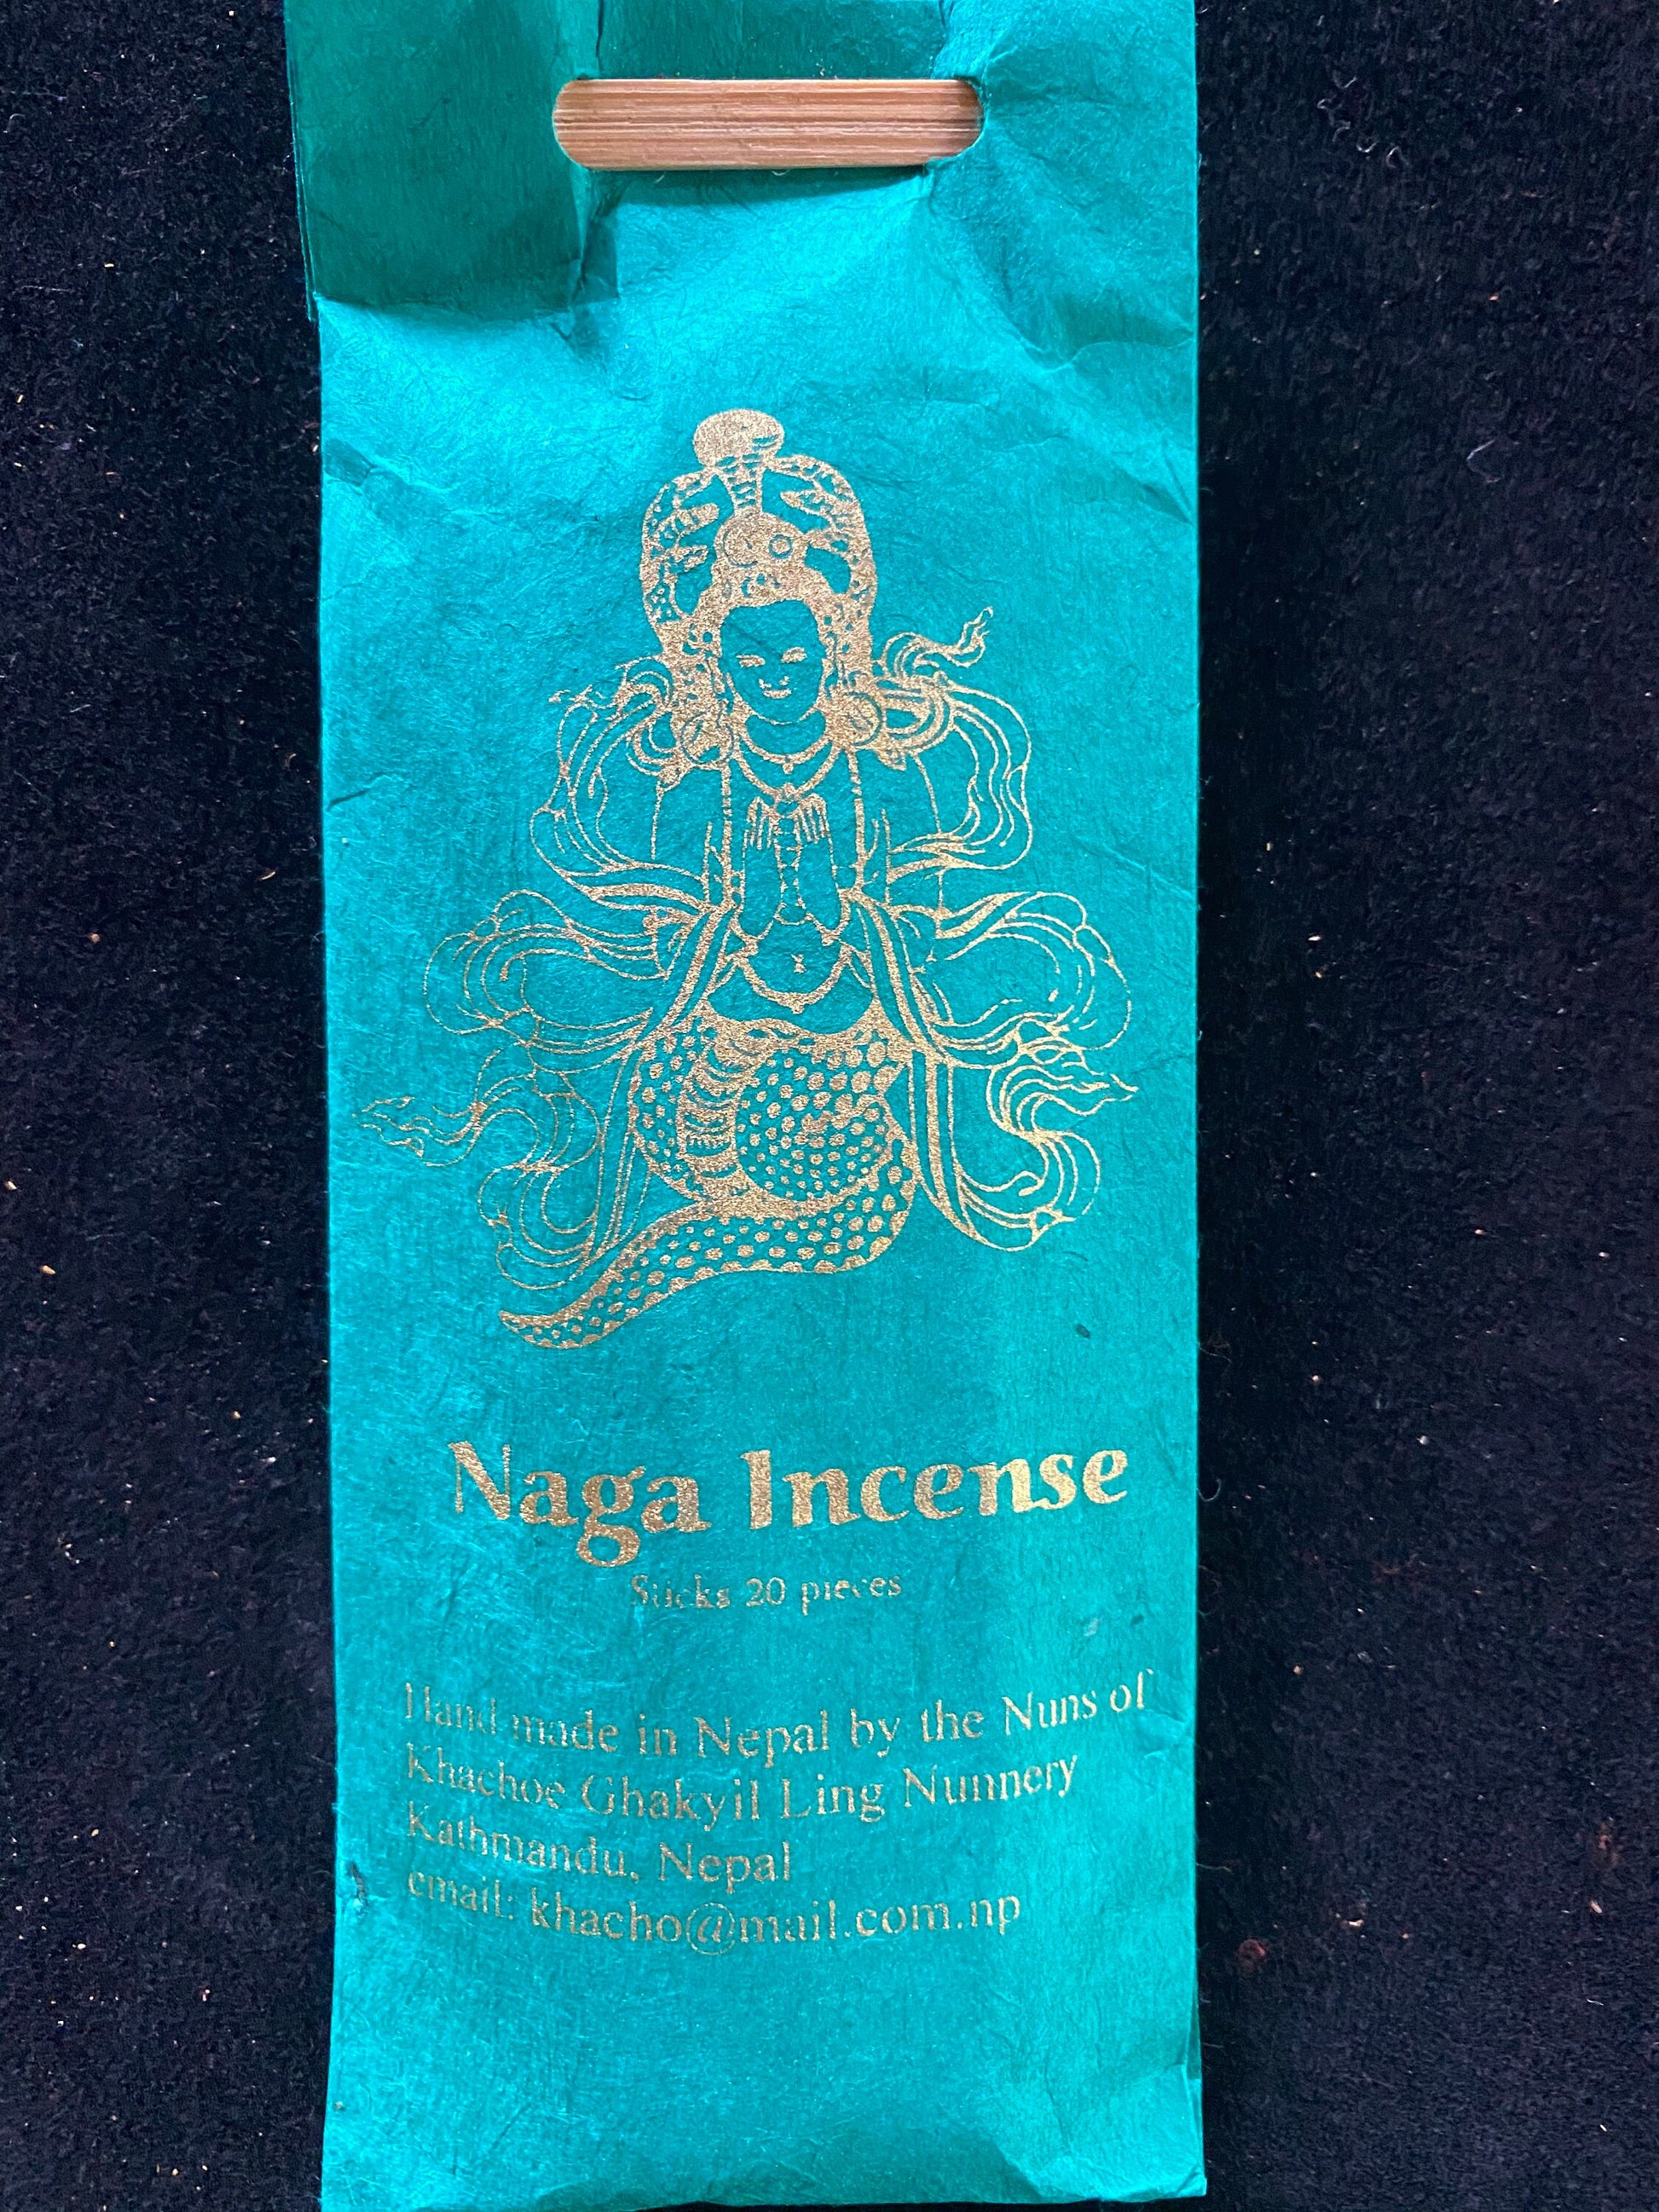 Naga Offering Incense Sticks | Tibetan Incense | 20 sticks | Khachoe Ghakyil Ling Nunnery